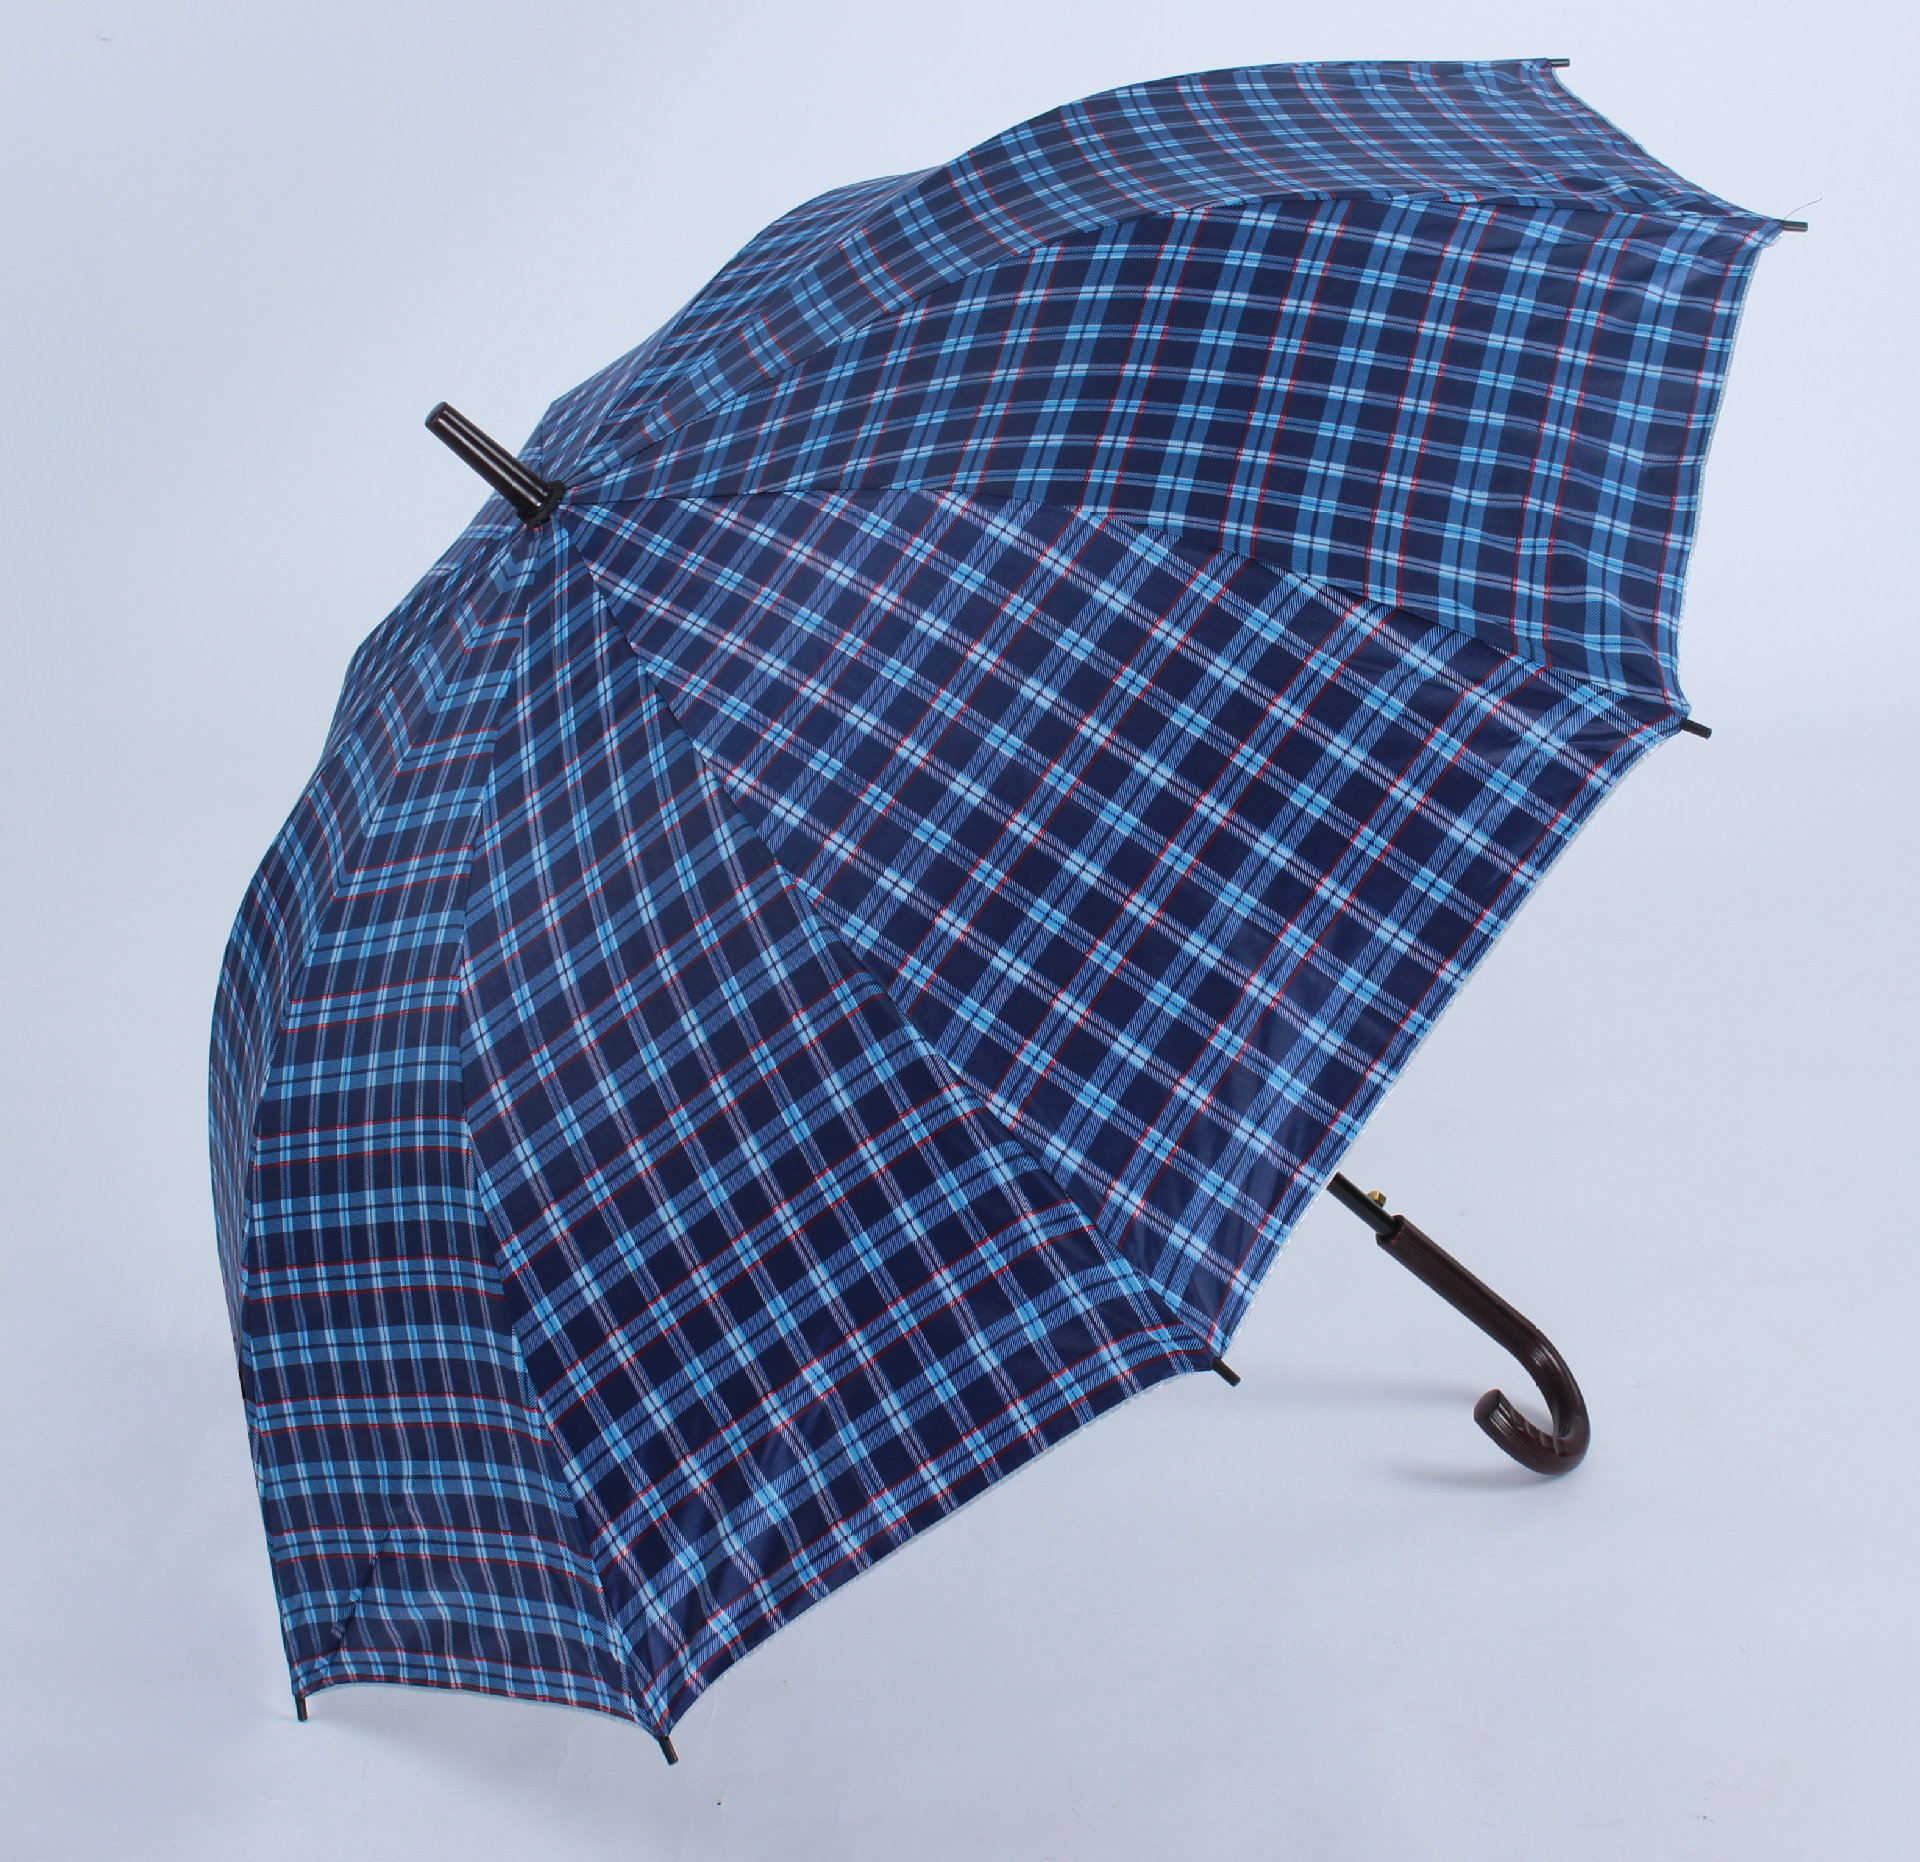 德州哪里有供应优质的雨伞|雨伞批发价格-书生商务网booksir.com.cn